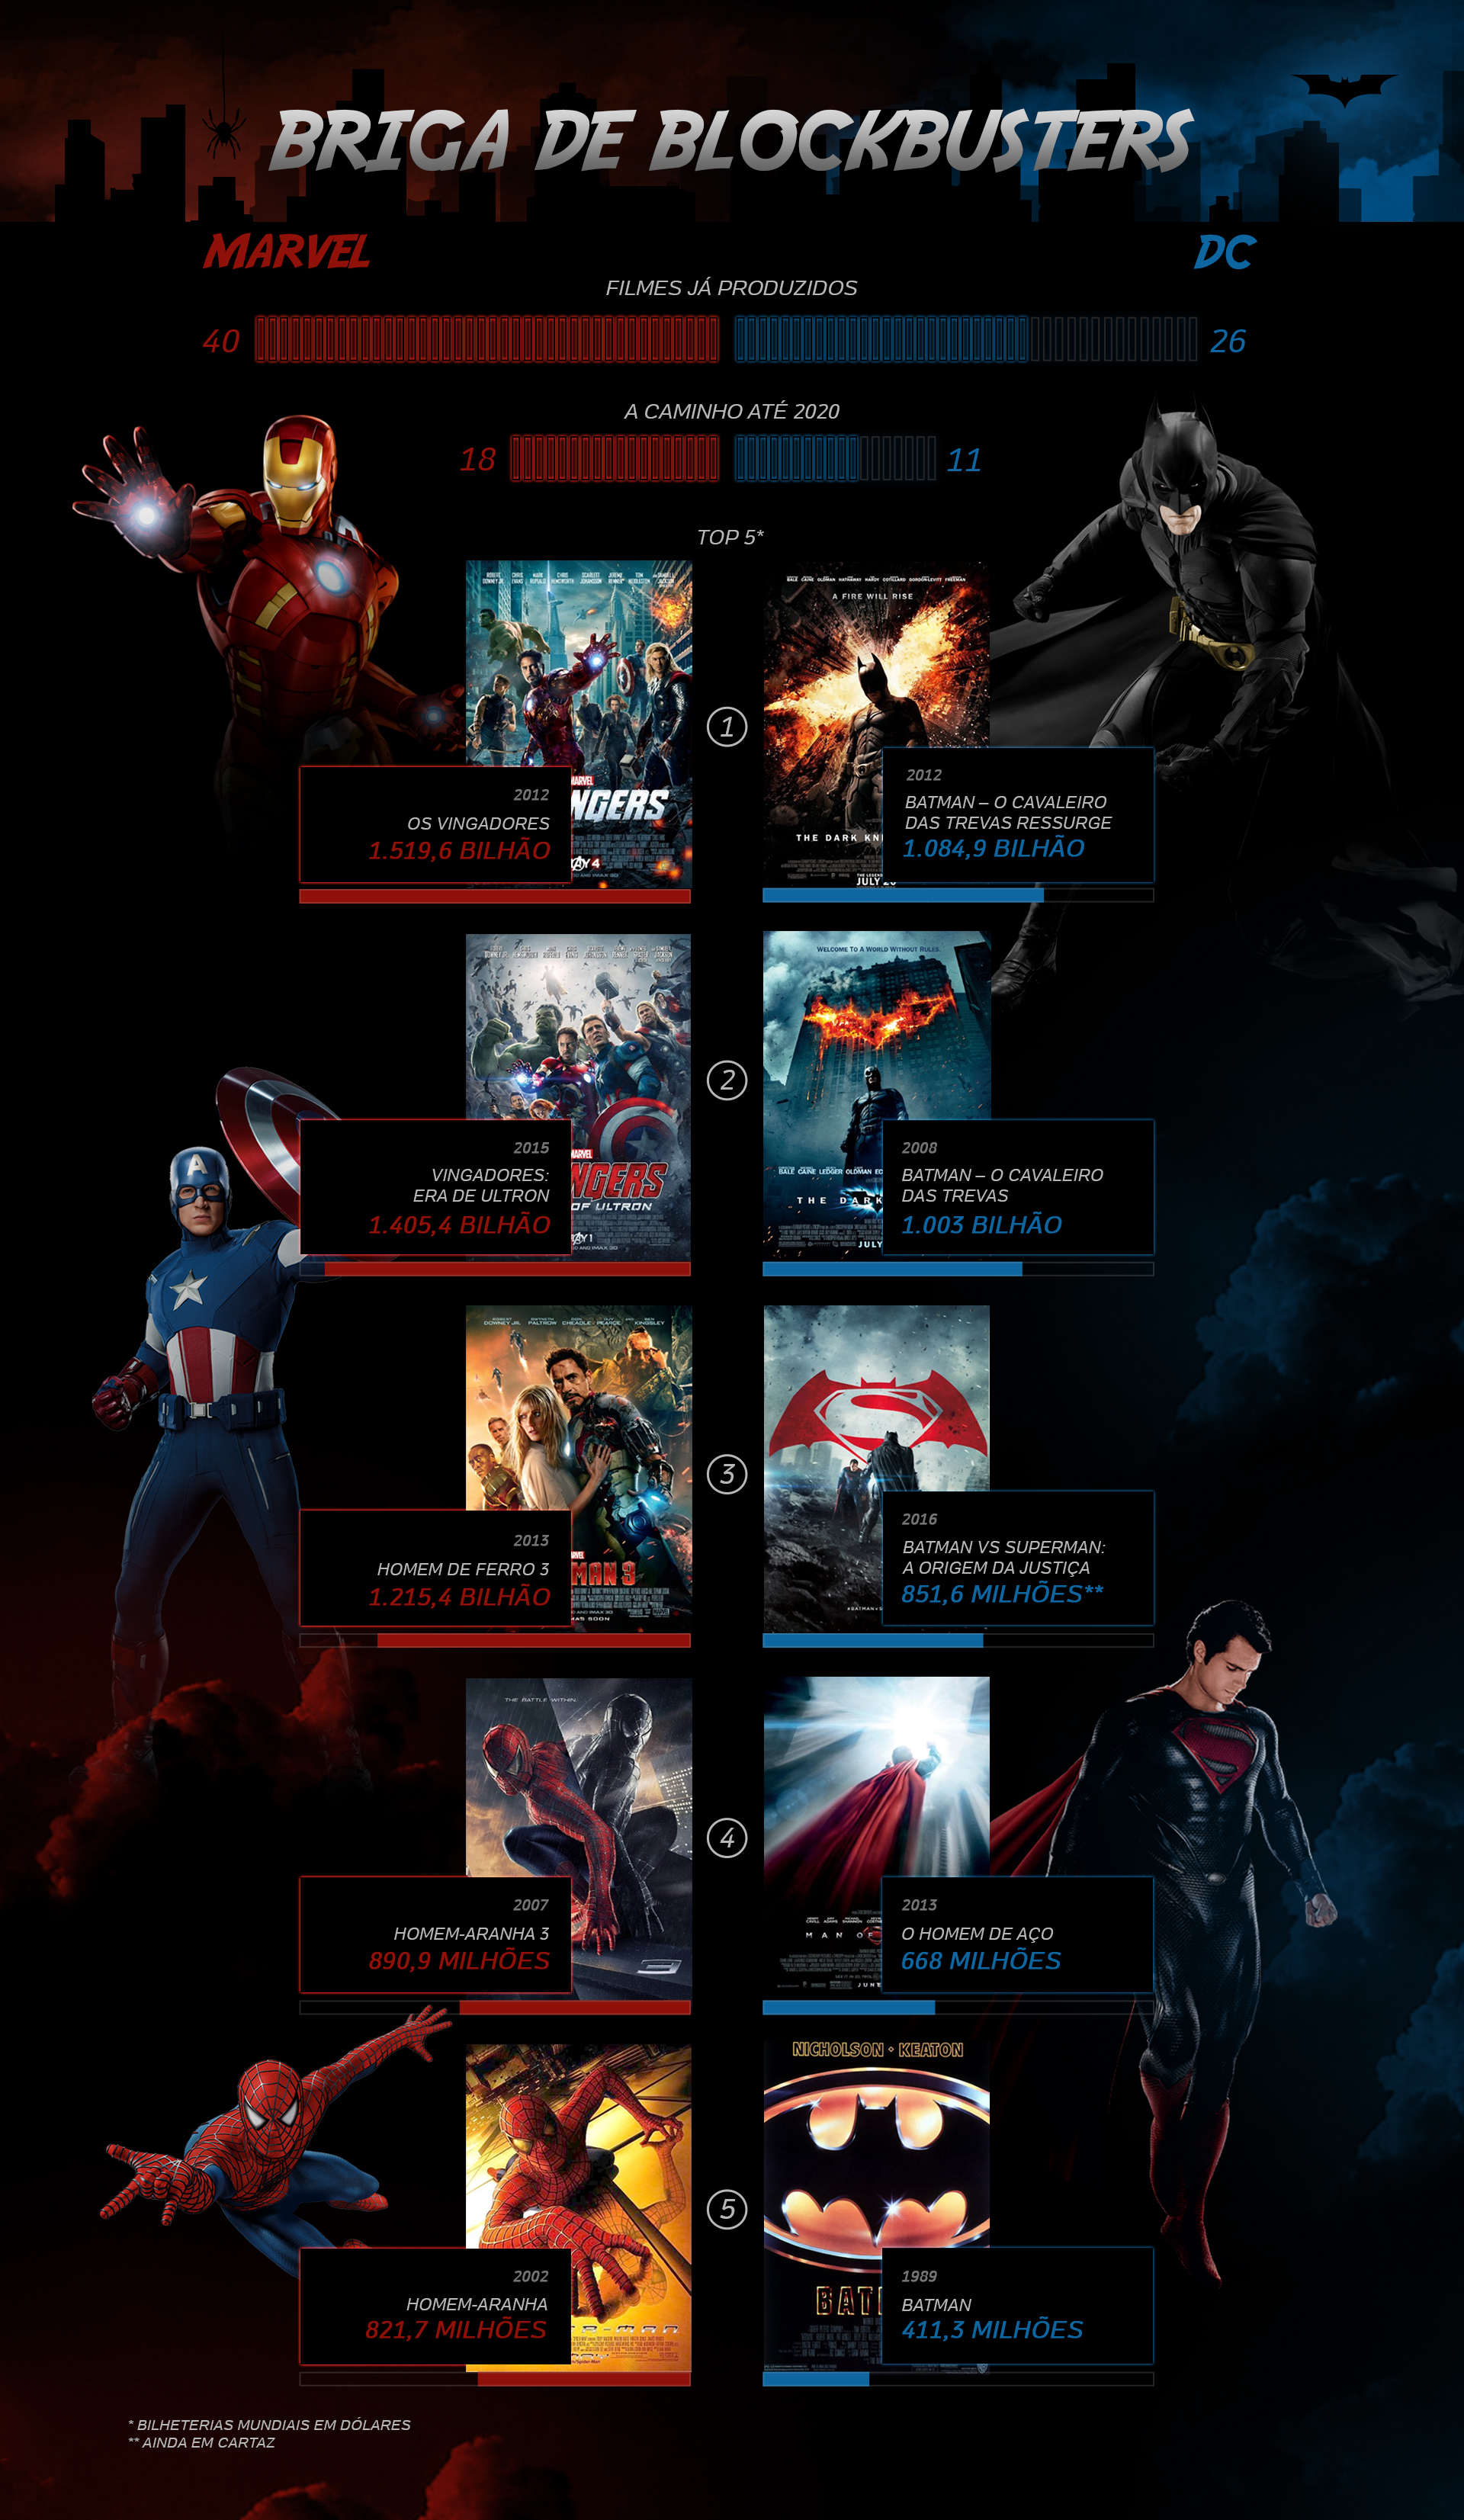 Confronto da Semana: Marvel x DC (Vilões)